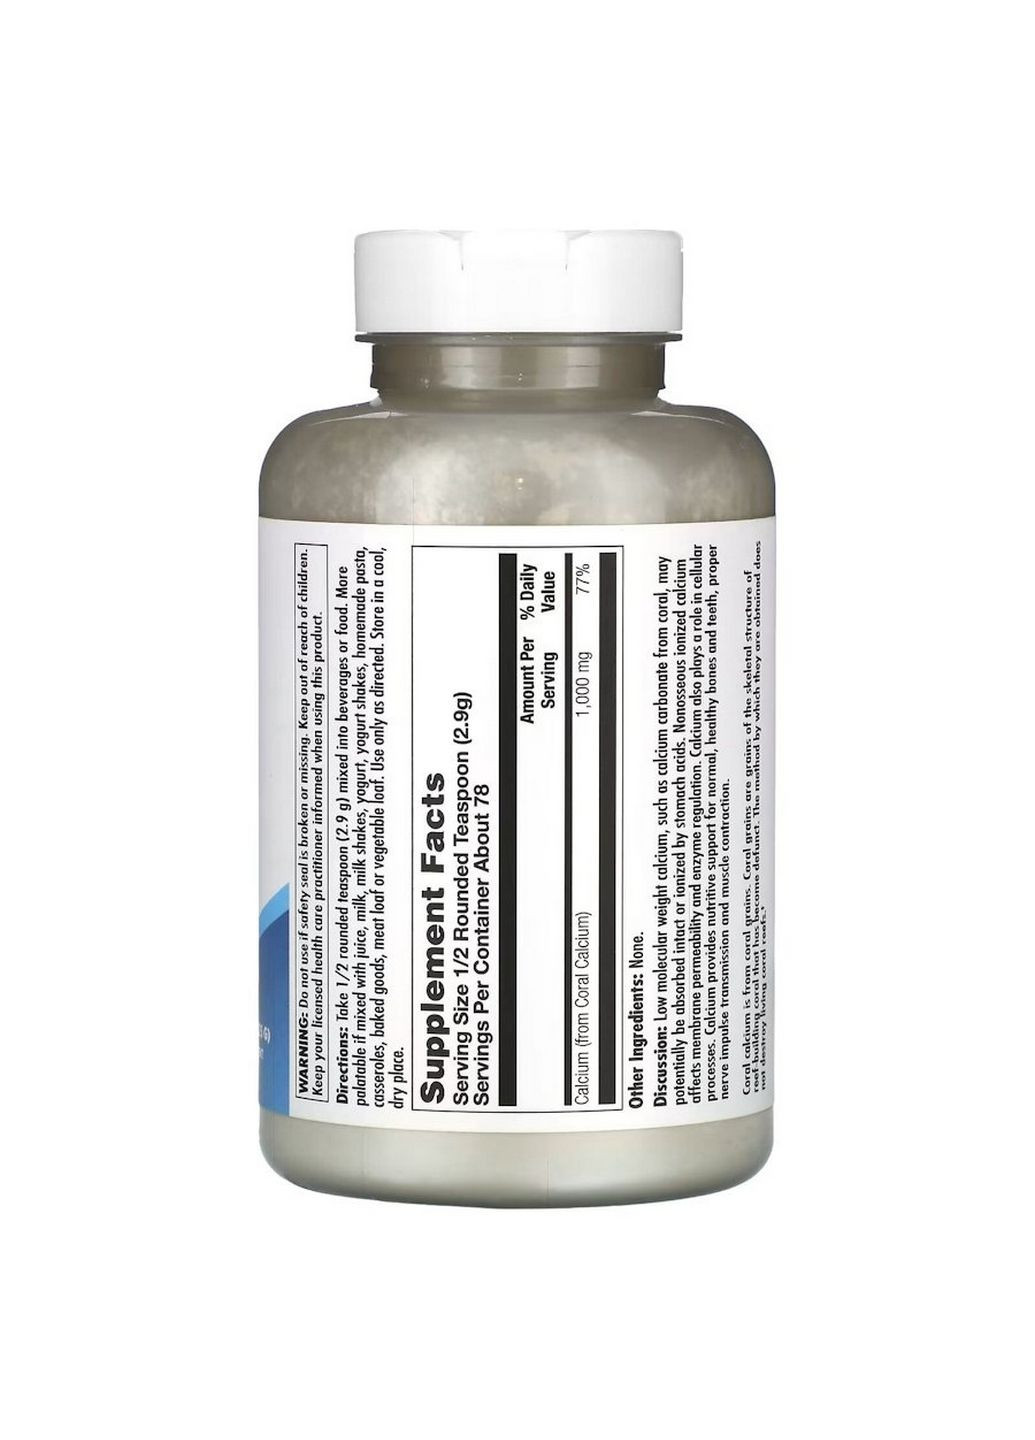 Витамины и минералы Coral Calcium Powder 1000 mg, 225 грамм KAL (293415932)